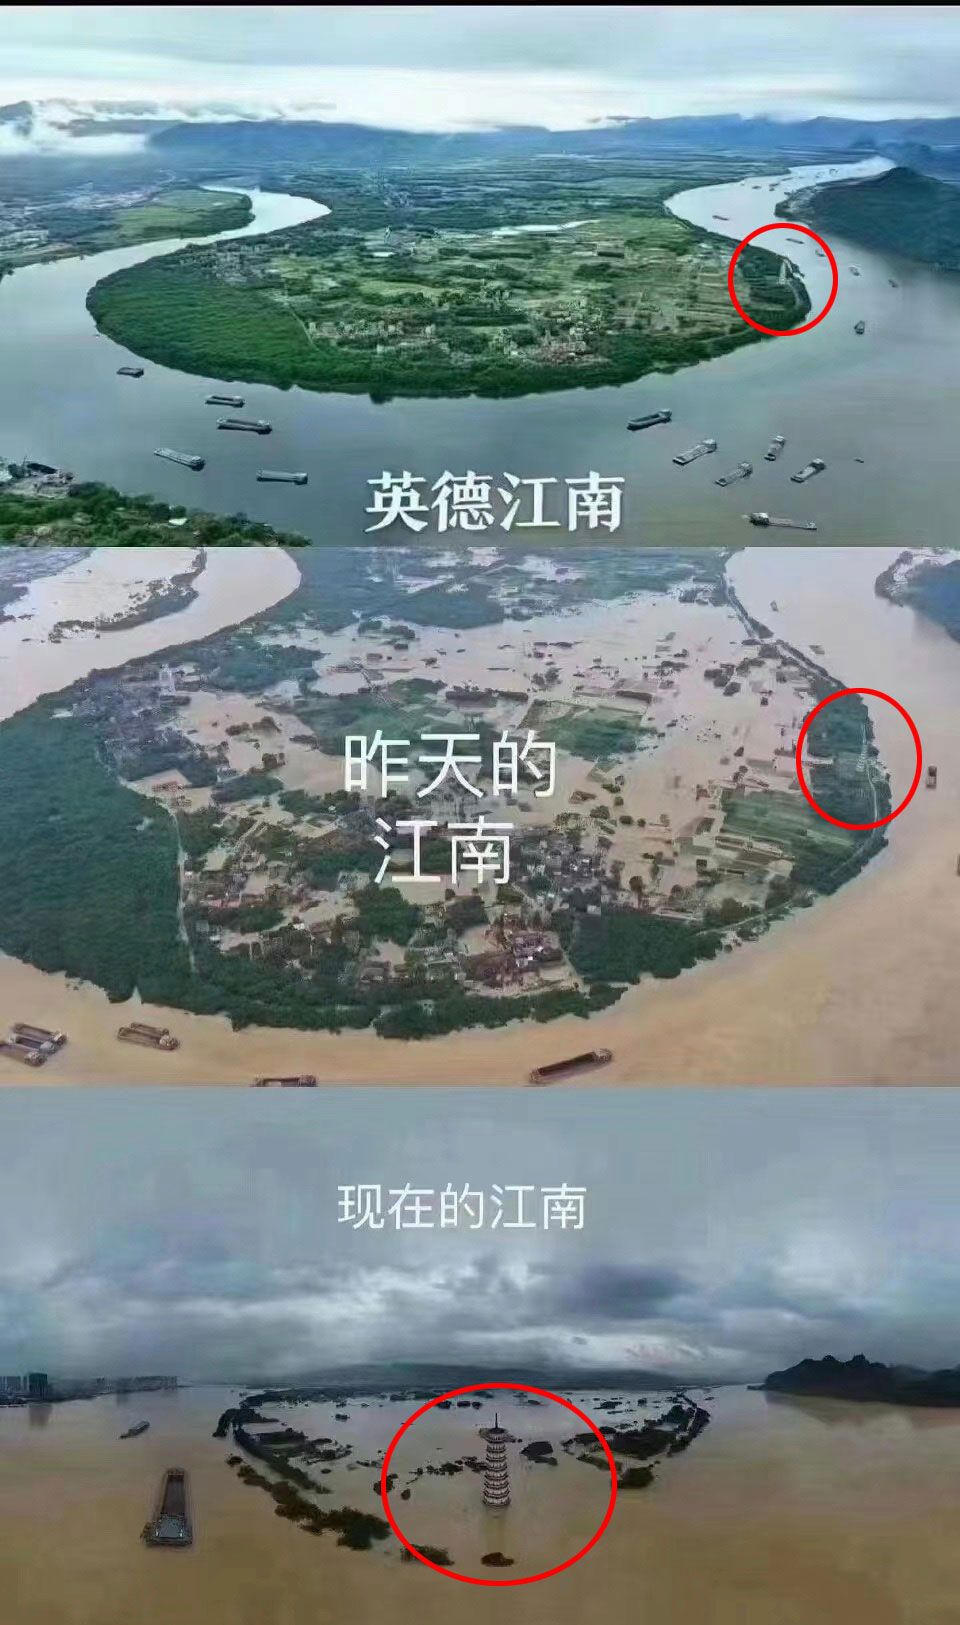 圖片顯示，英德江南村全村幾乎被淹。